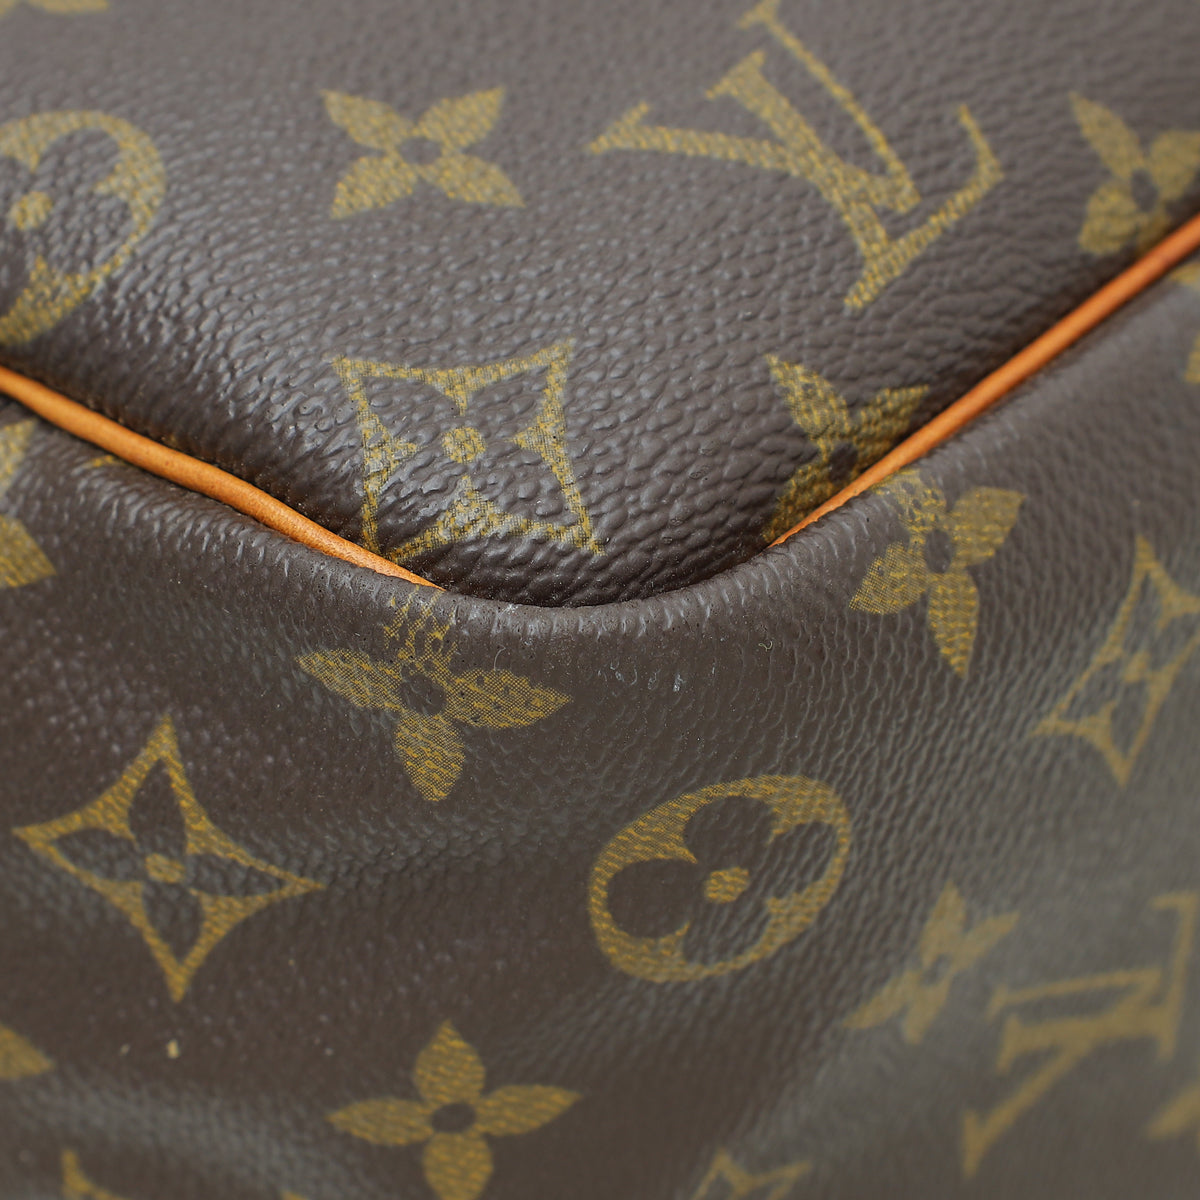 Louis Vuitton Monogram Deauville Boston GM Bag – The Closet